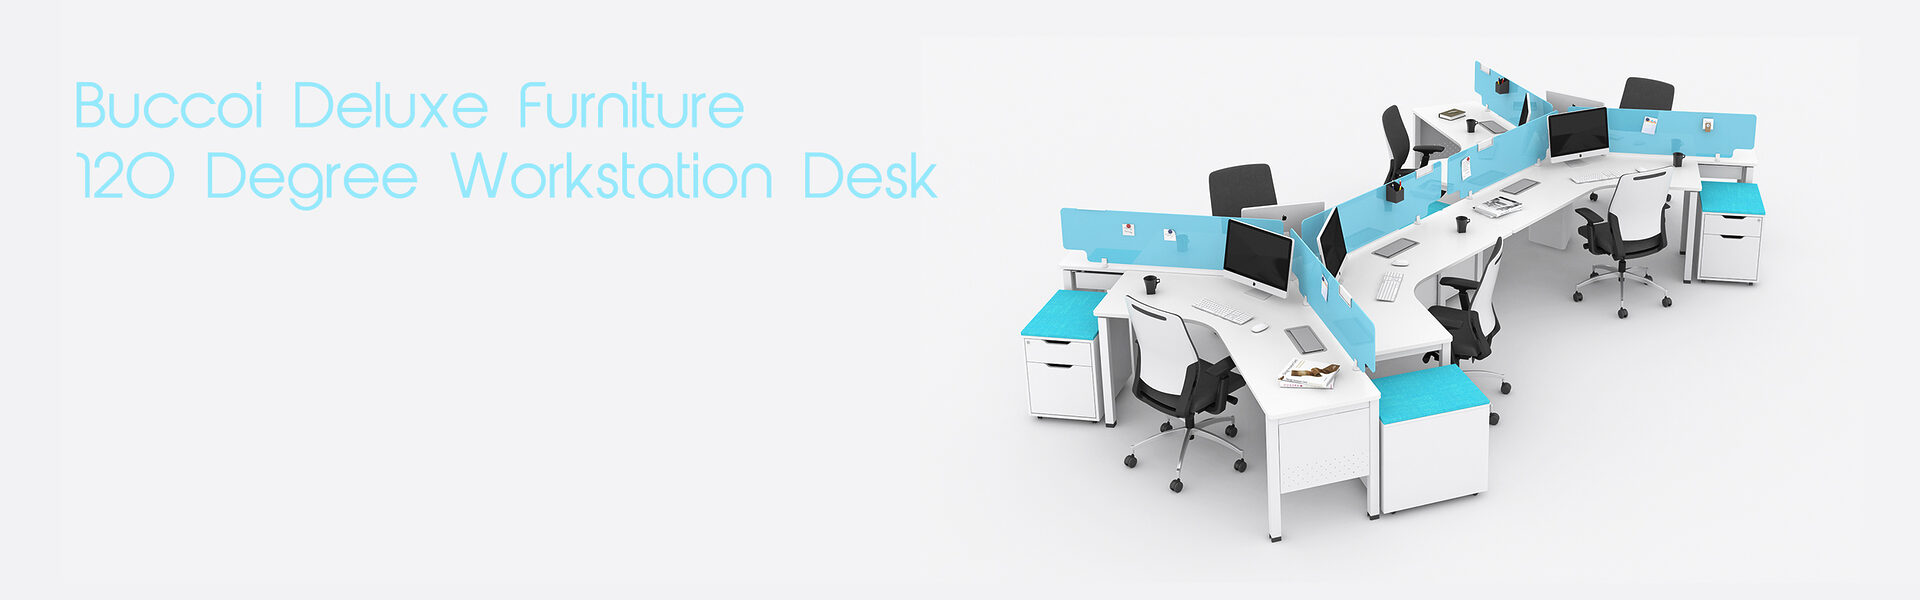 120 Degree Workstation Desk